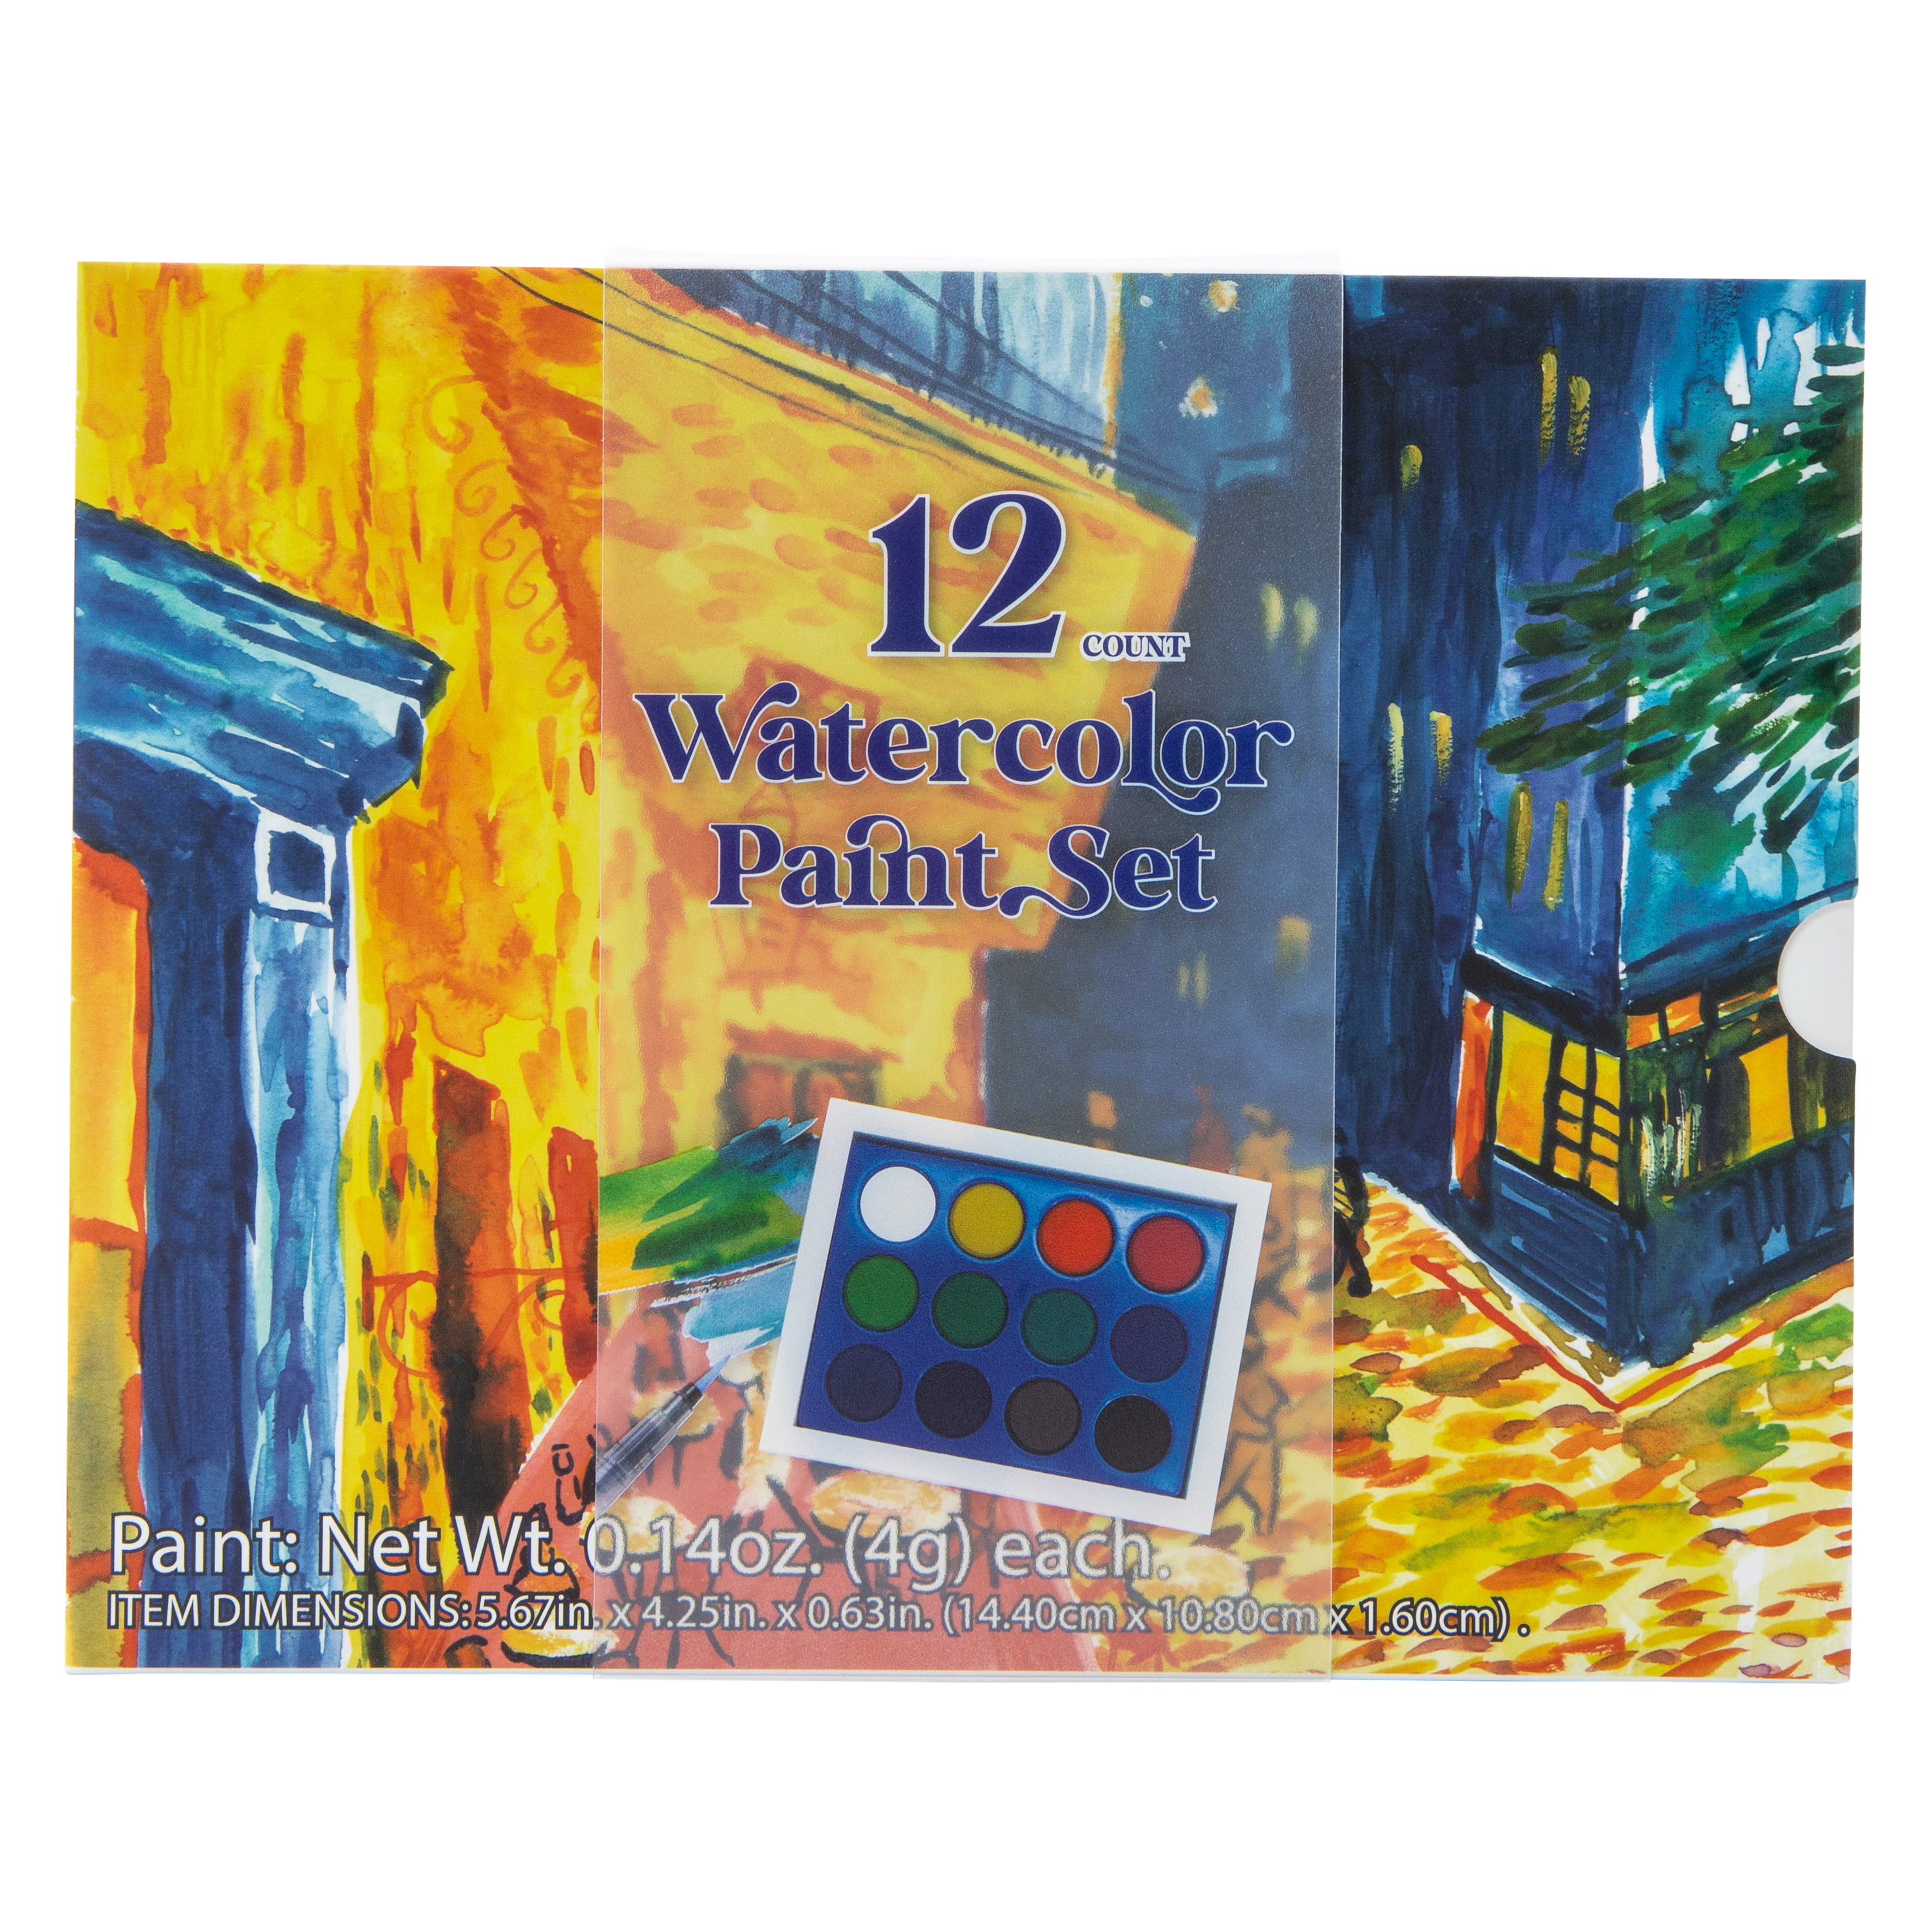 Watercolor Paint Set 12-Count